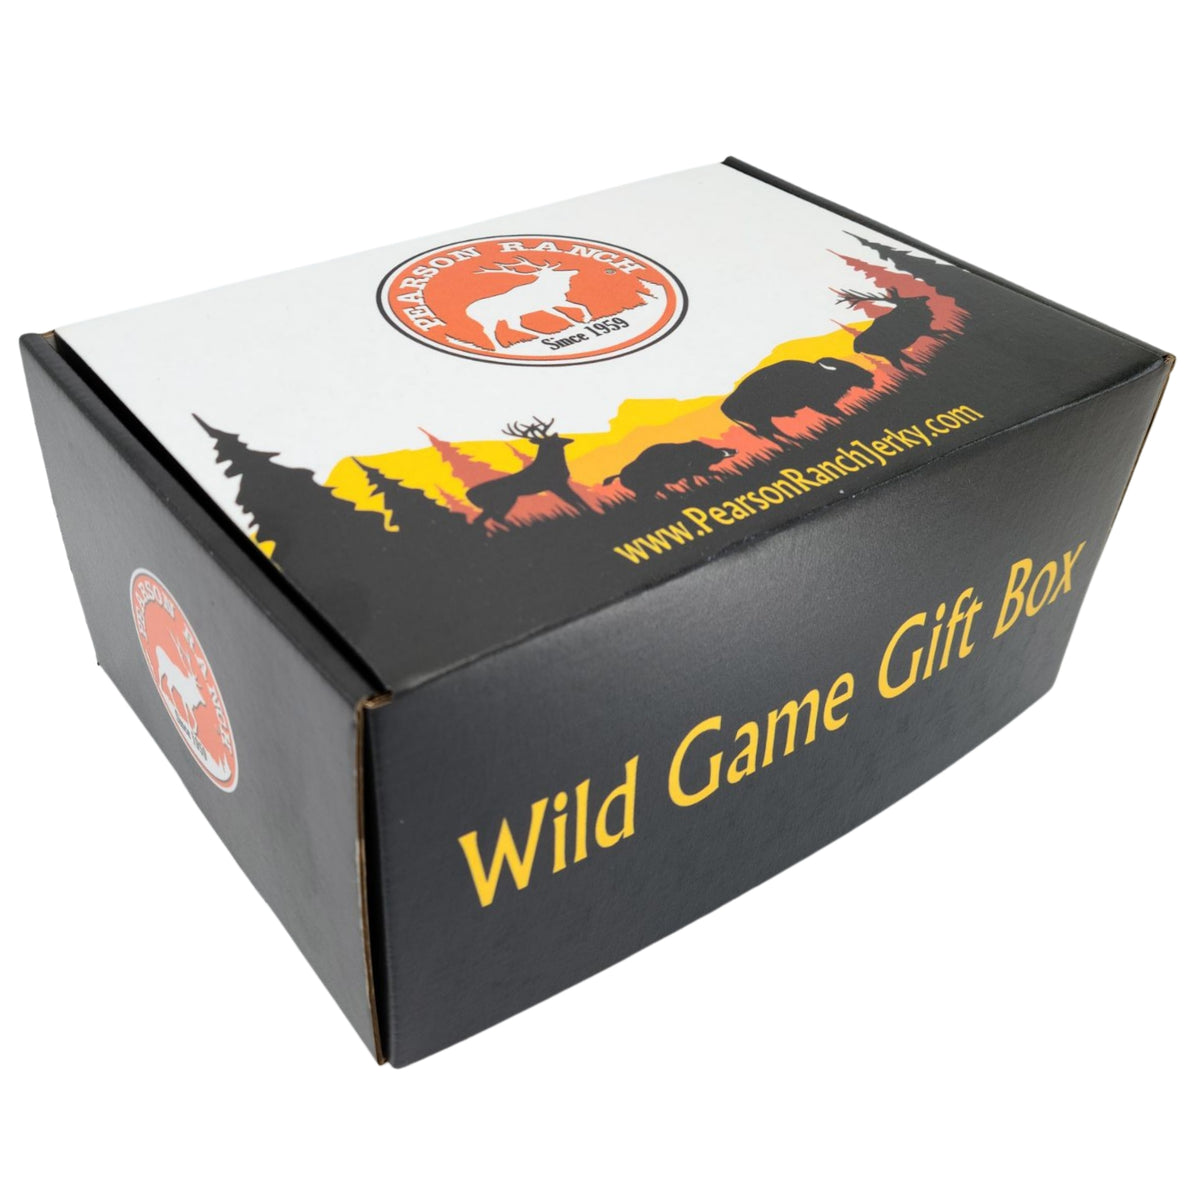 Wild Game Gift Box - Large